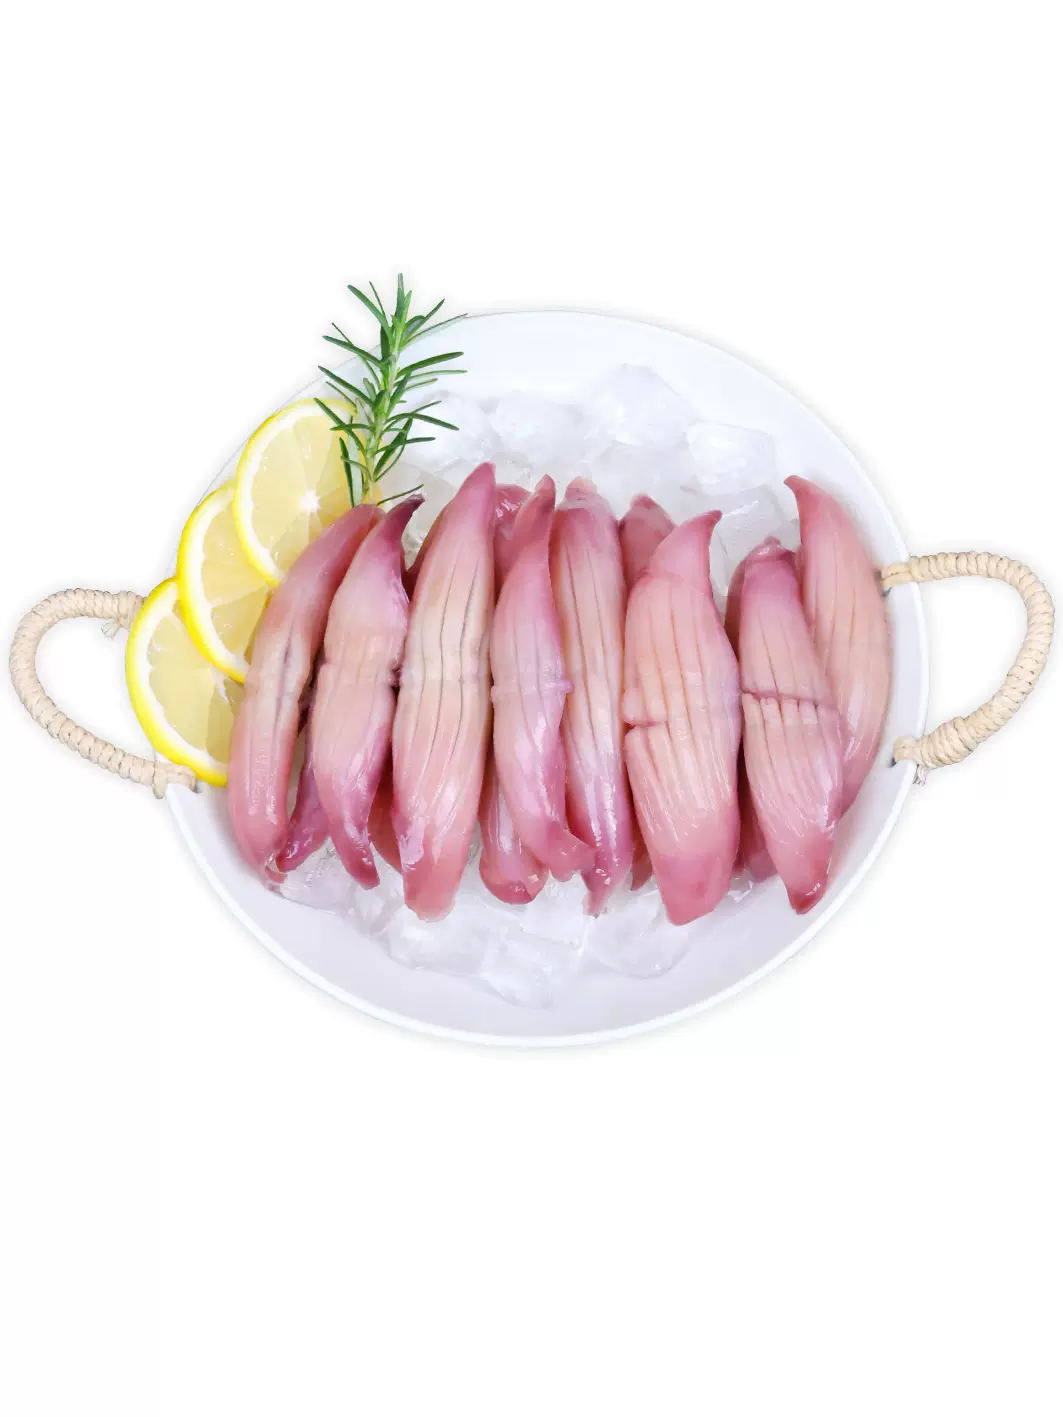 鴻順火箭魷魚-半成品食材生鮮新鮮魷魚耳花